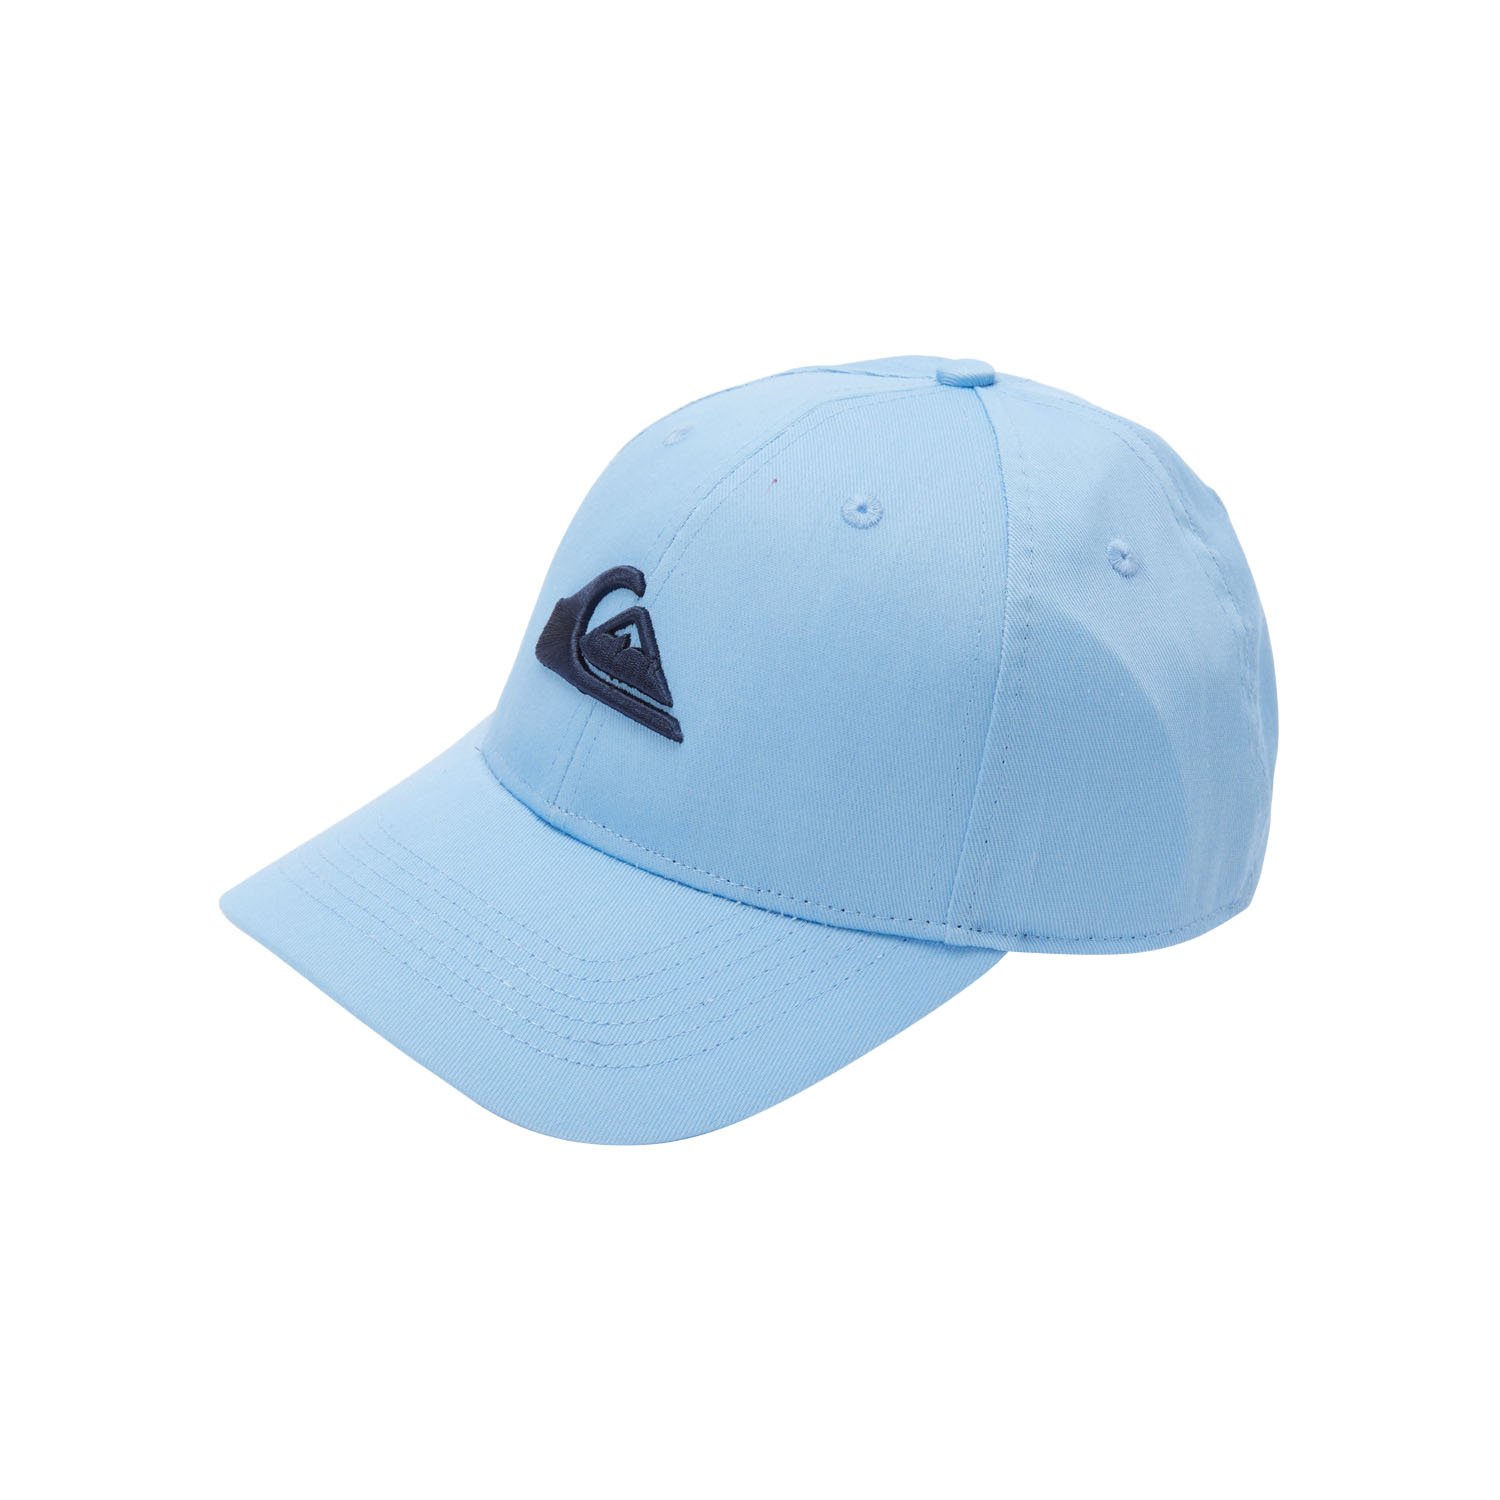 Quiksilver Decades Şapka - Mavi - 1